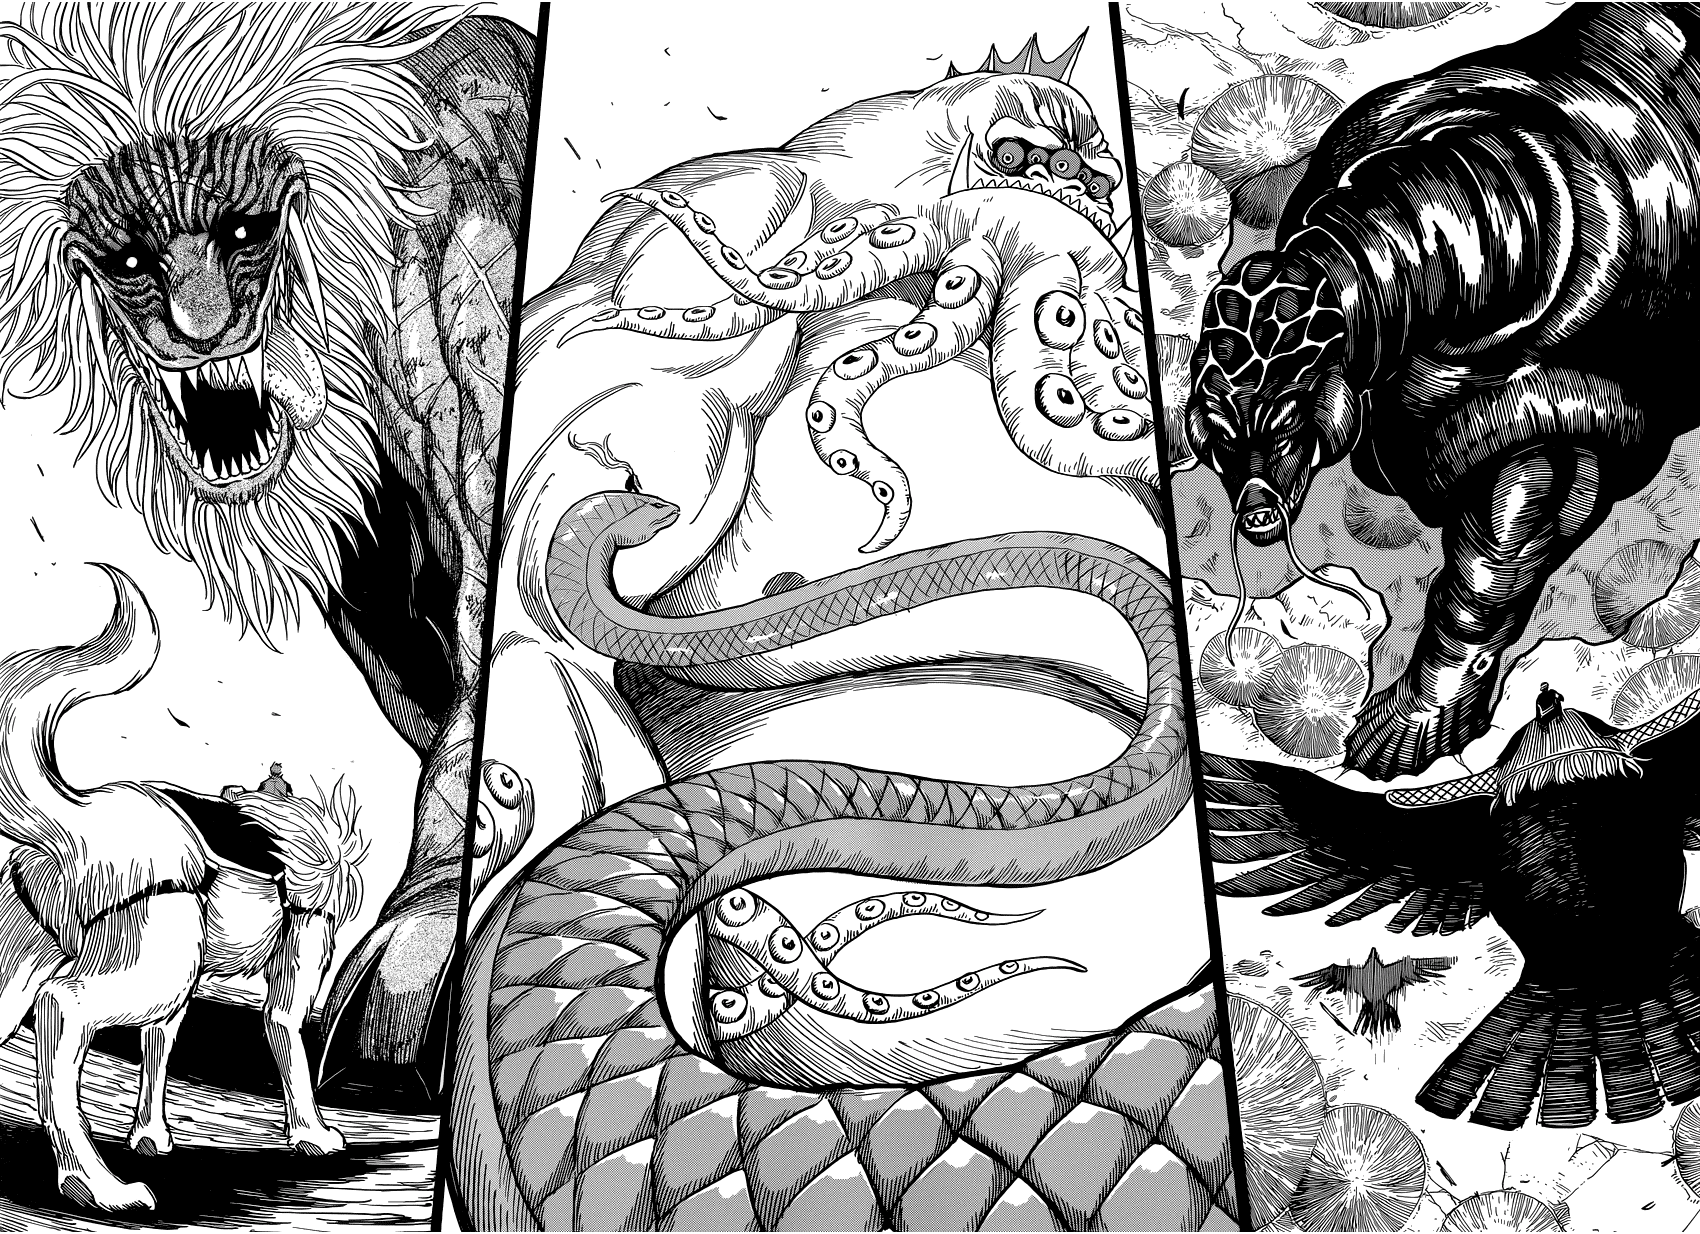 Манга про зверей. Торико монстры. Четыре зверя Торико. Торико Манга. Королевская змея Торико.